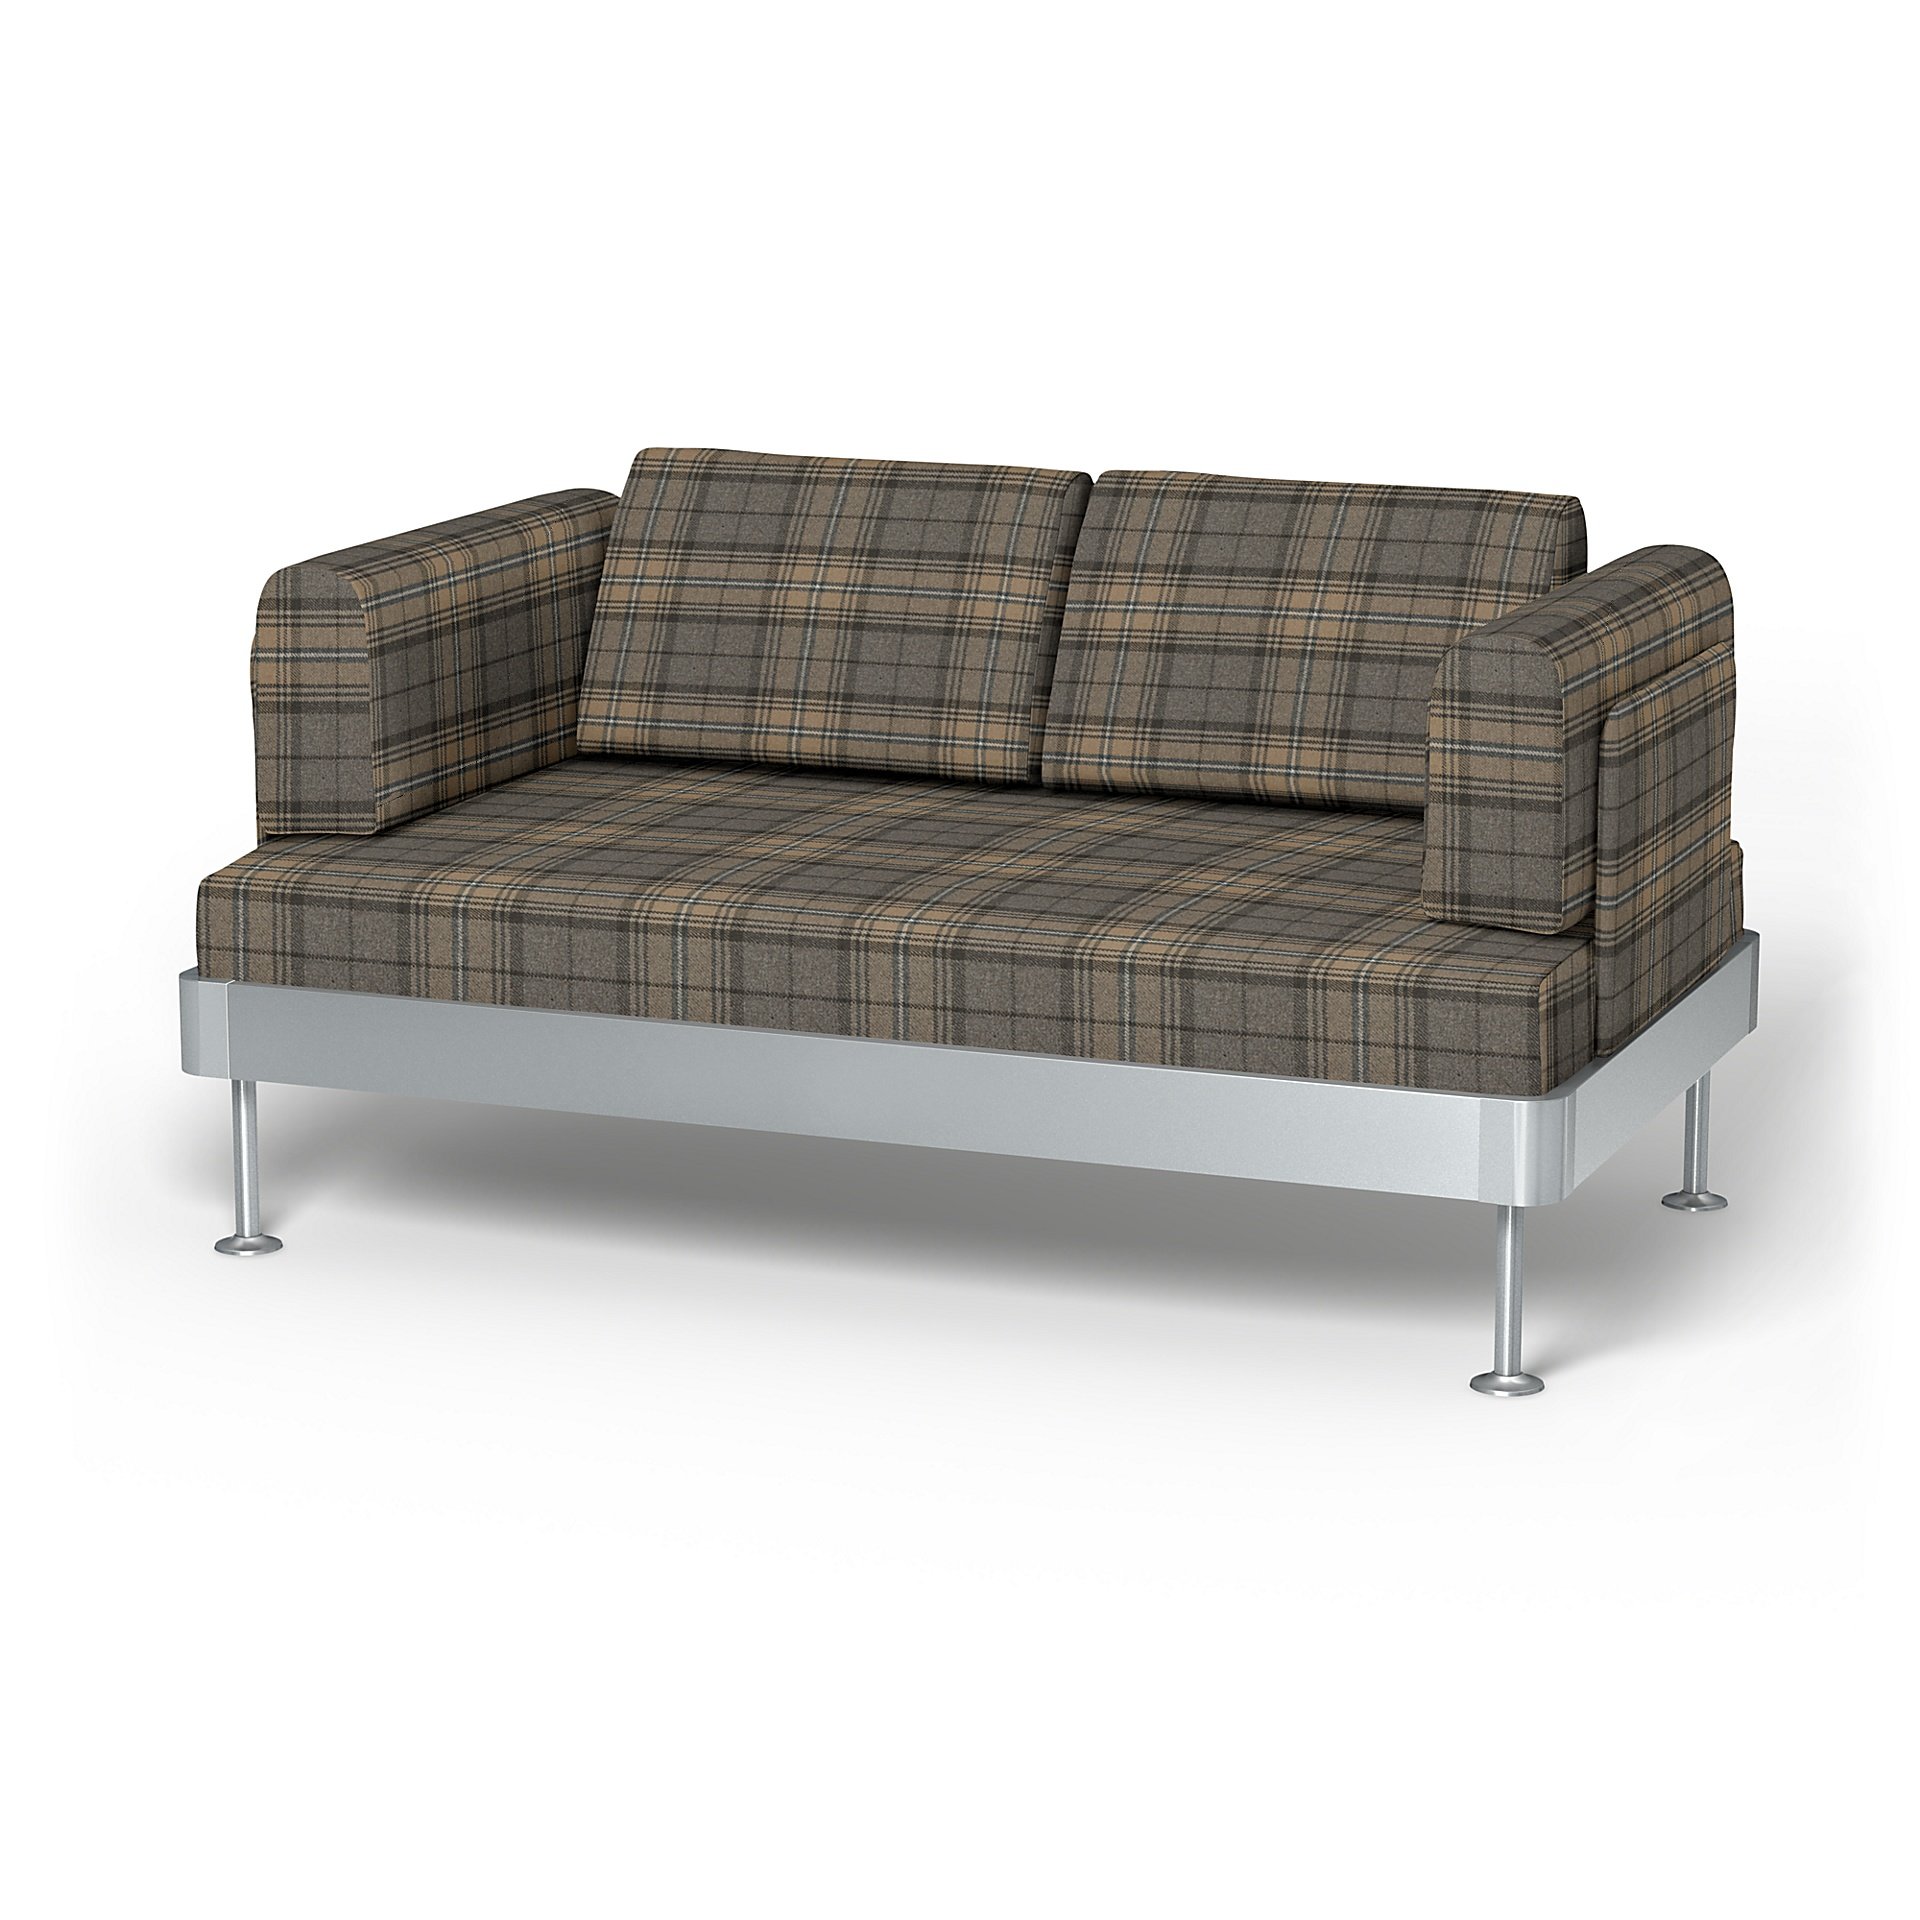 IKEA - Delaktig 2 Seater Sofa Cover, Bark Brown, Wool - Bemz